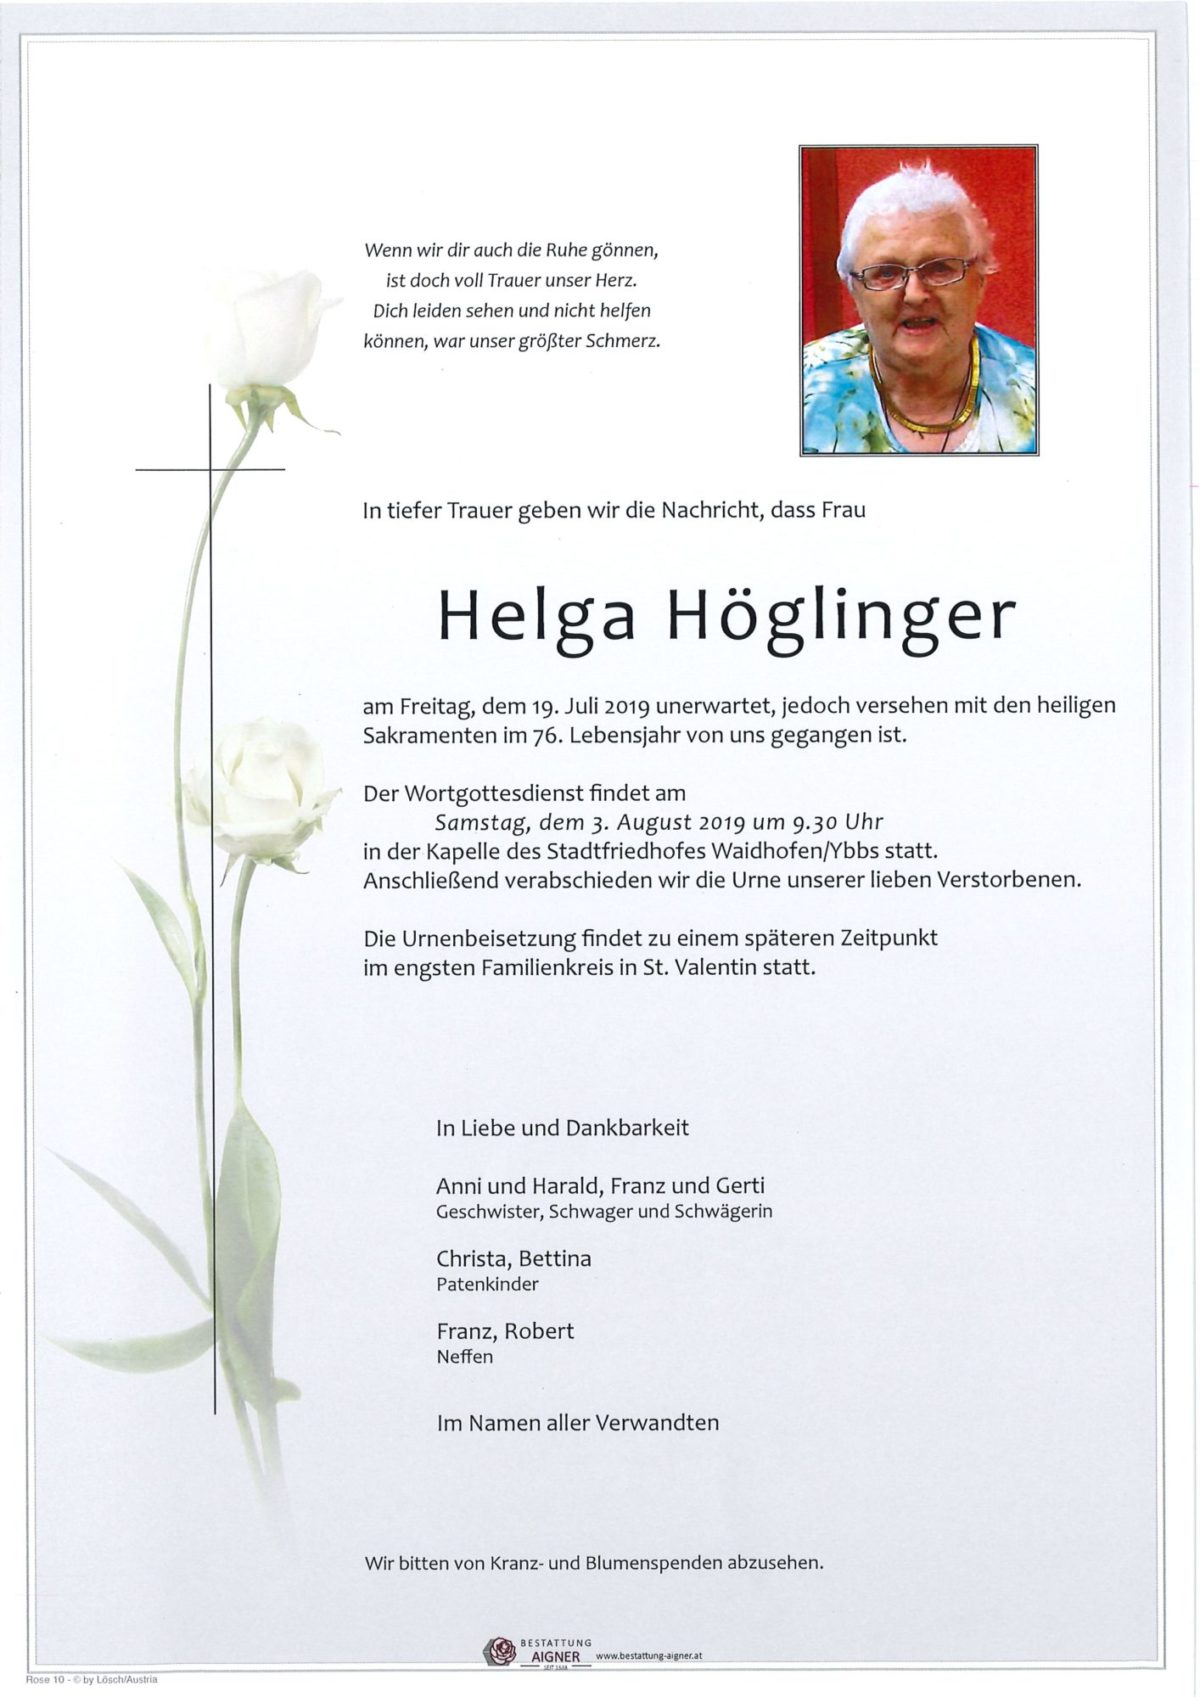 Helga Höglinger